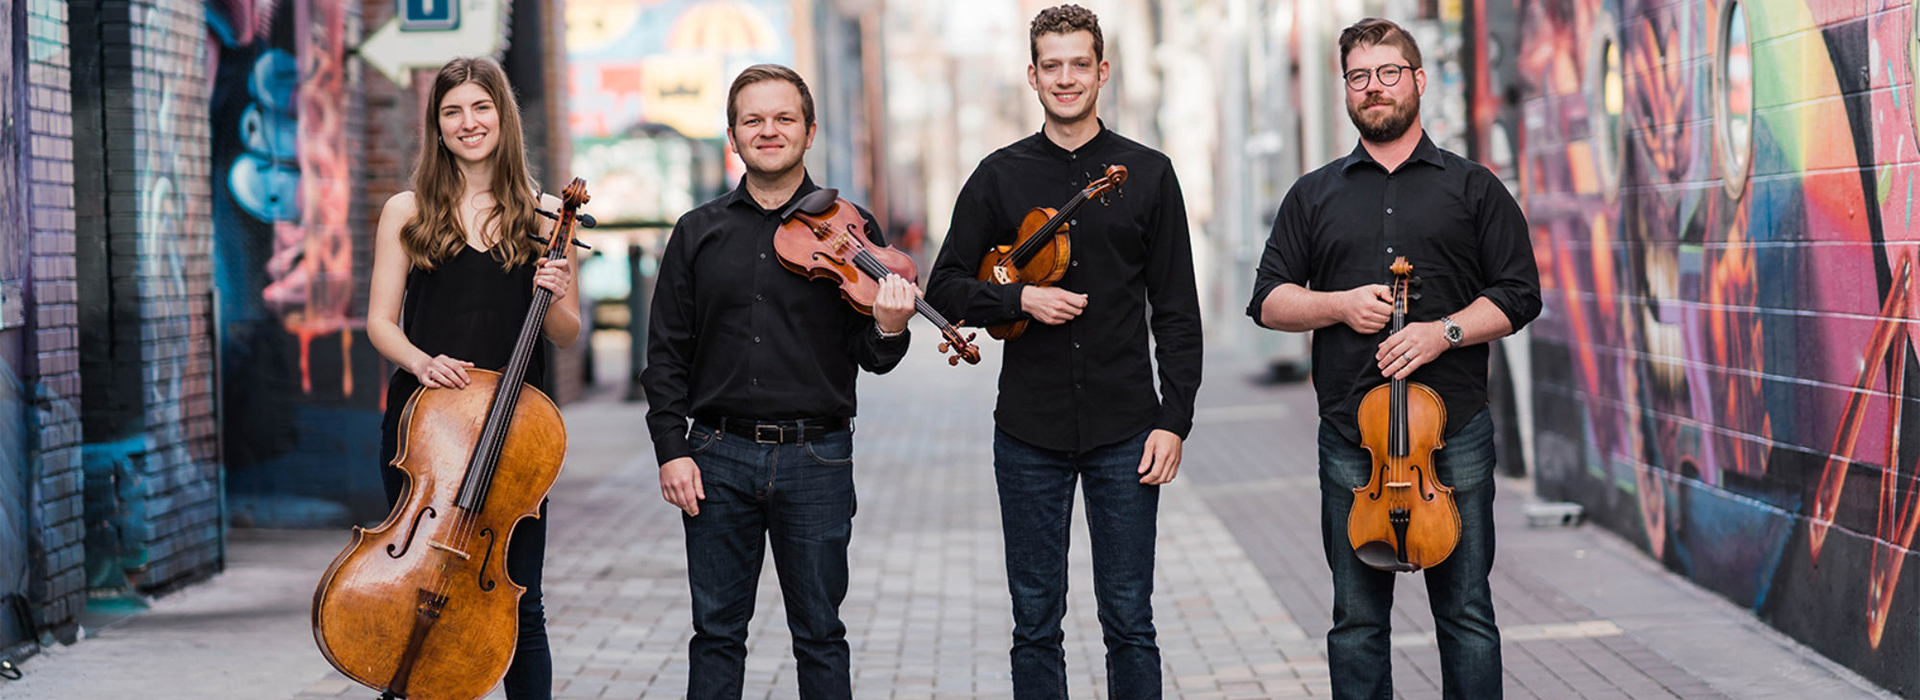 String quartet stands in a city scene